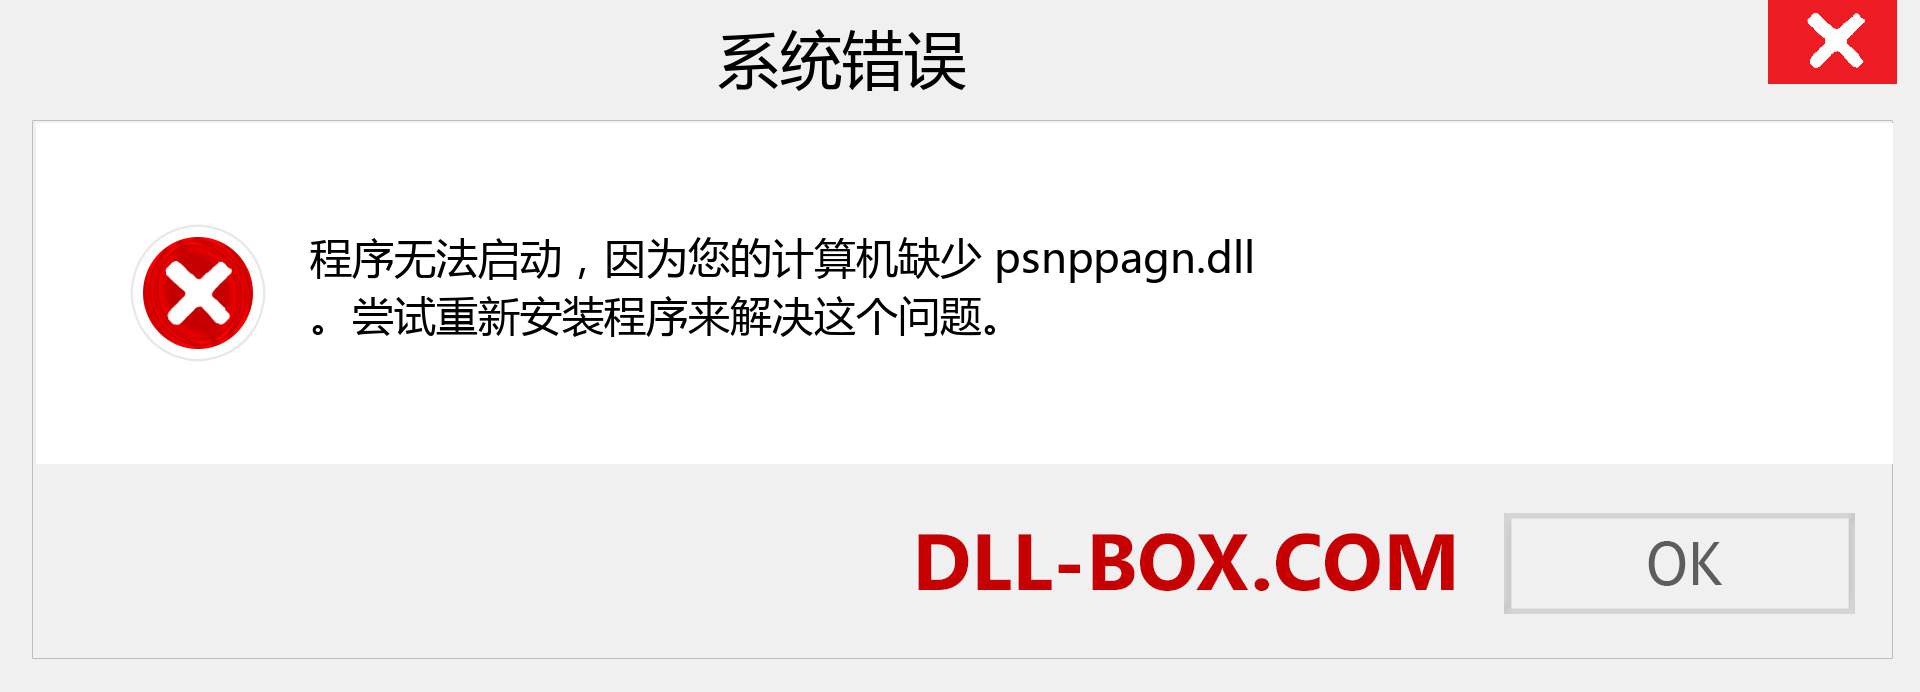 psnppagn.dll 文件丢失？。 适用于 Windows 7、8、10 的下载 - 修复 Windows、照片、图像上的 psnppagn dll 丢失错误